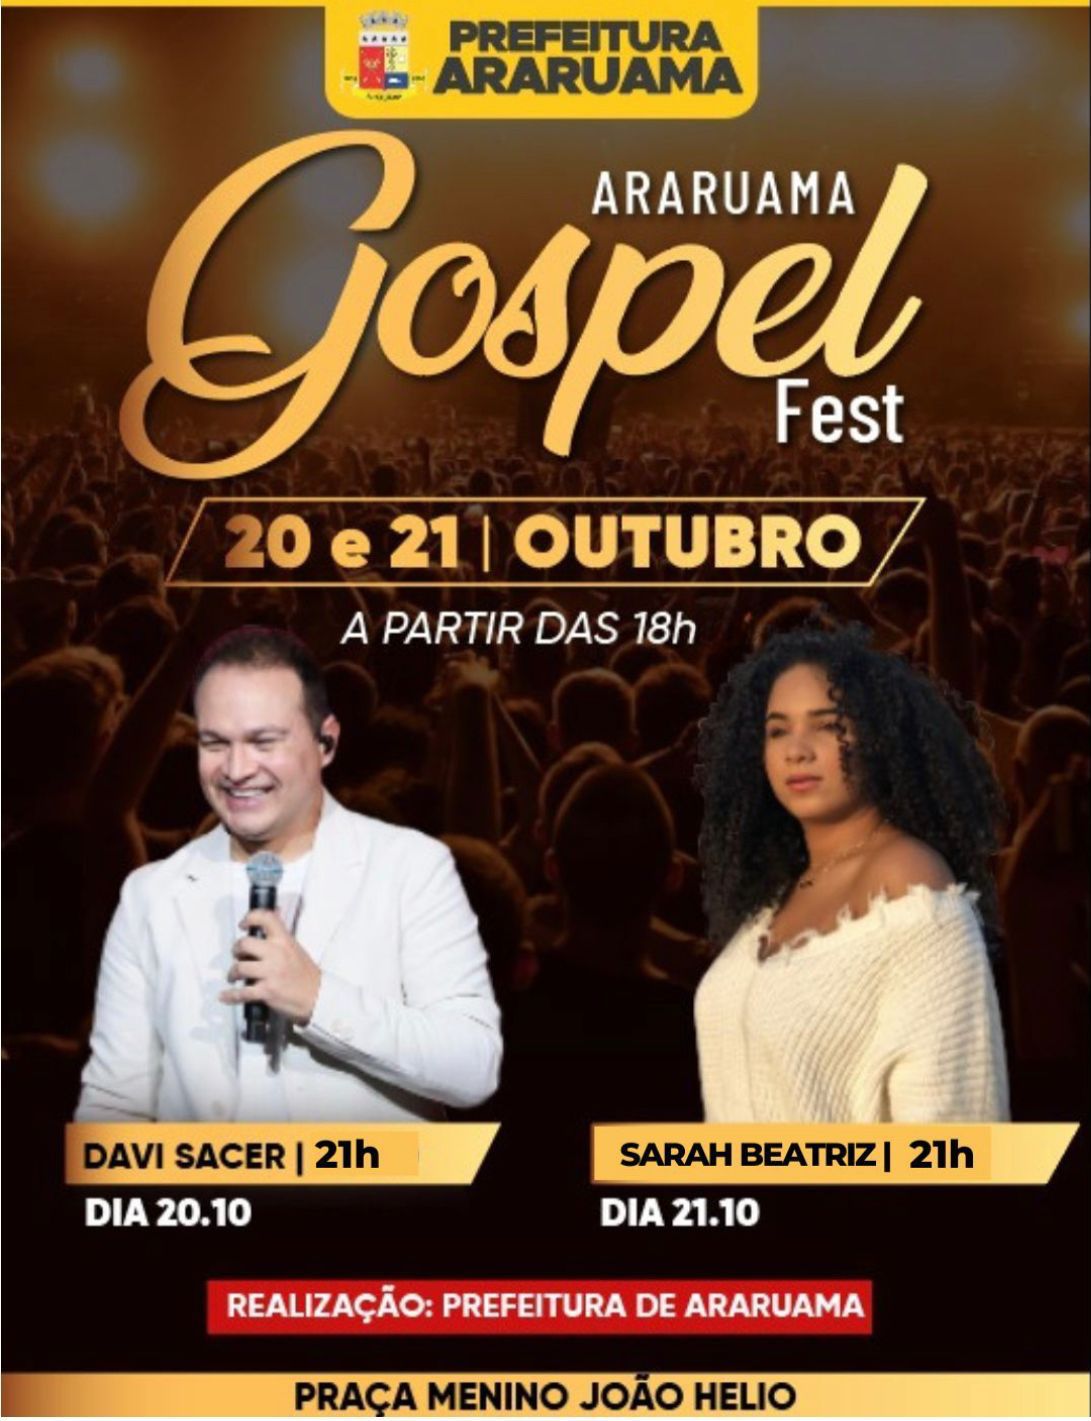 Prefeitura vai realizar a 2ª edição do “Araruama Gospel Fest”.